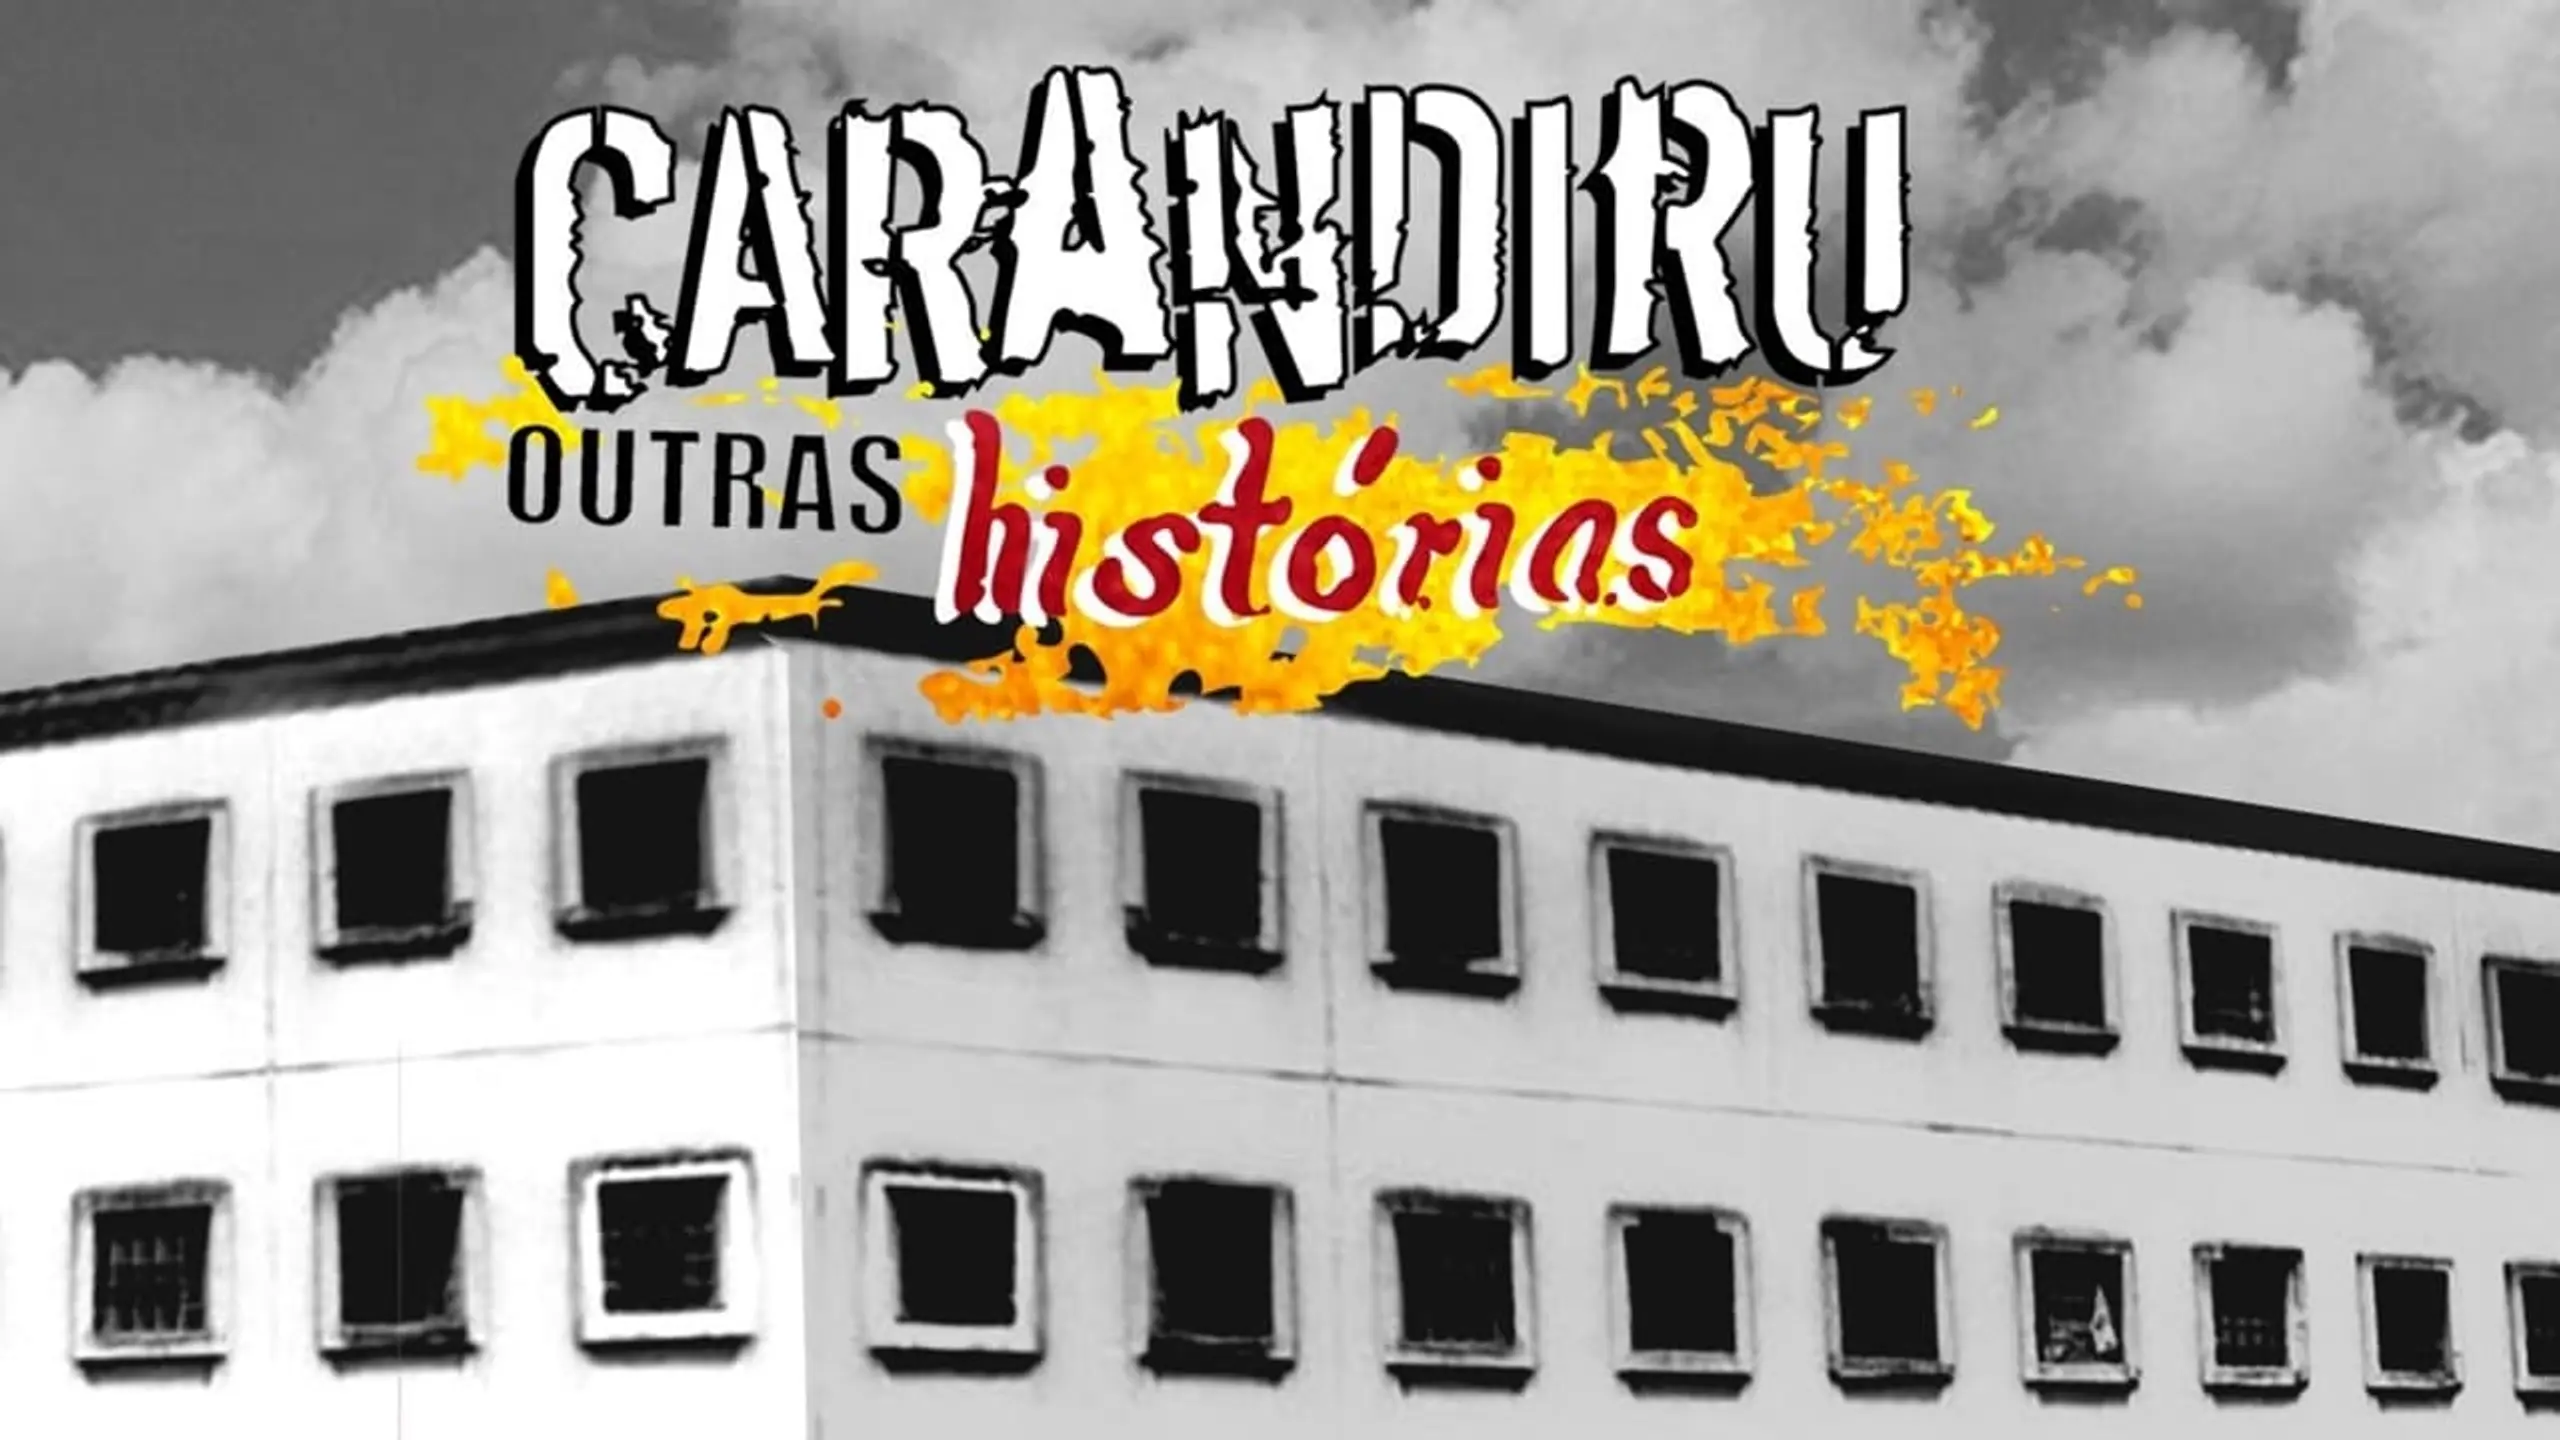 Carandiru: Outras Histórias